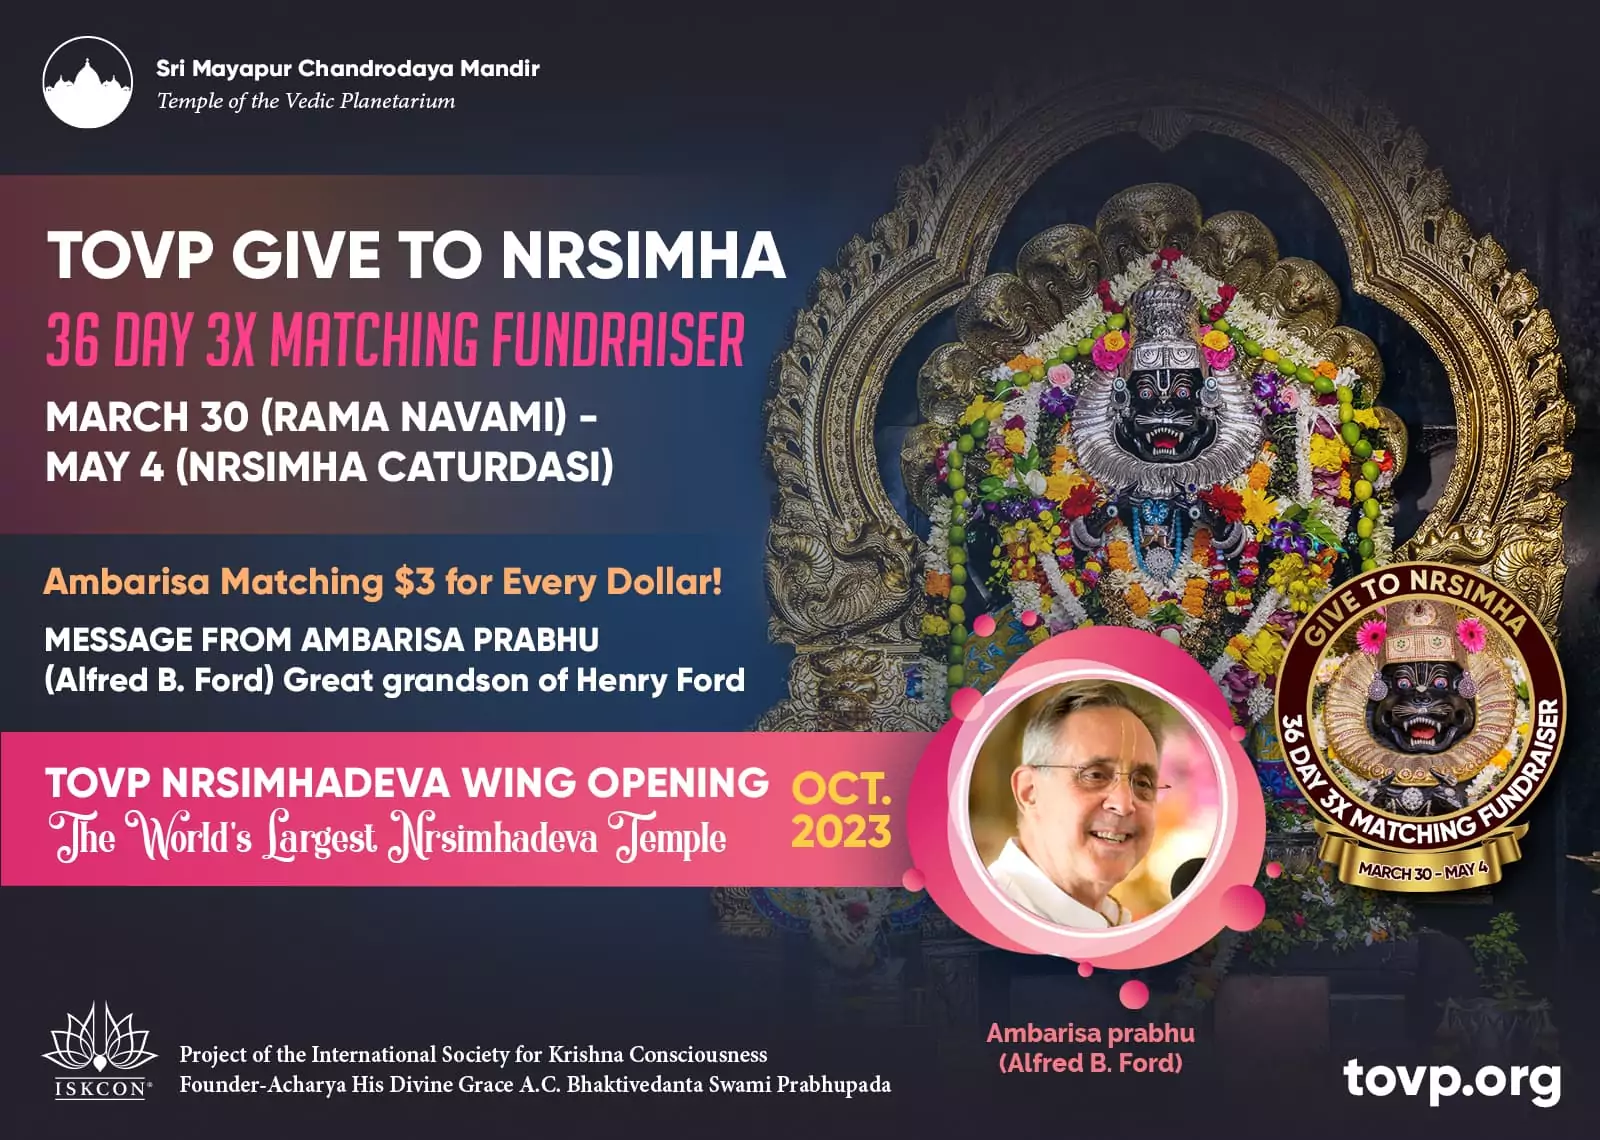 TOVP doa para Nrsimha 36 dias 3X para angariação de fundos